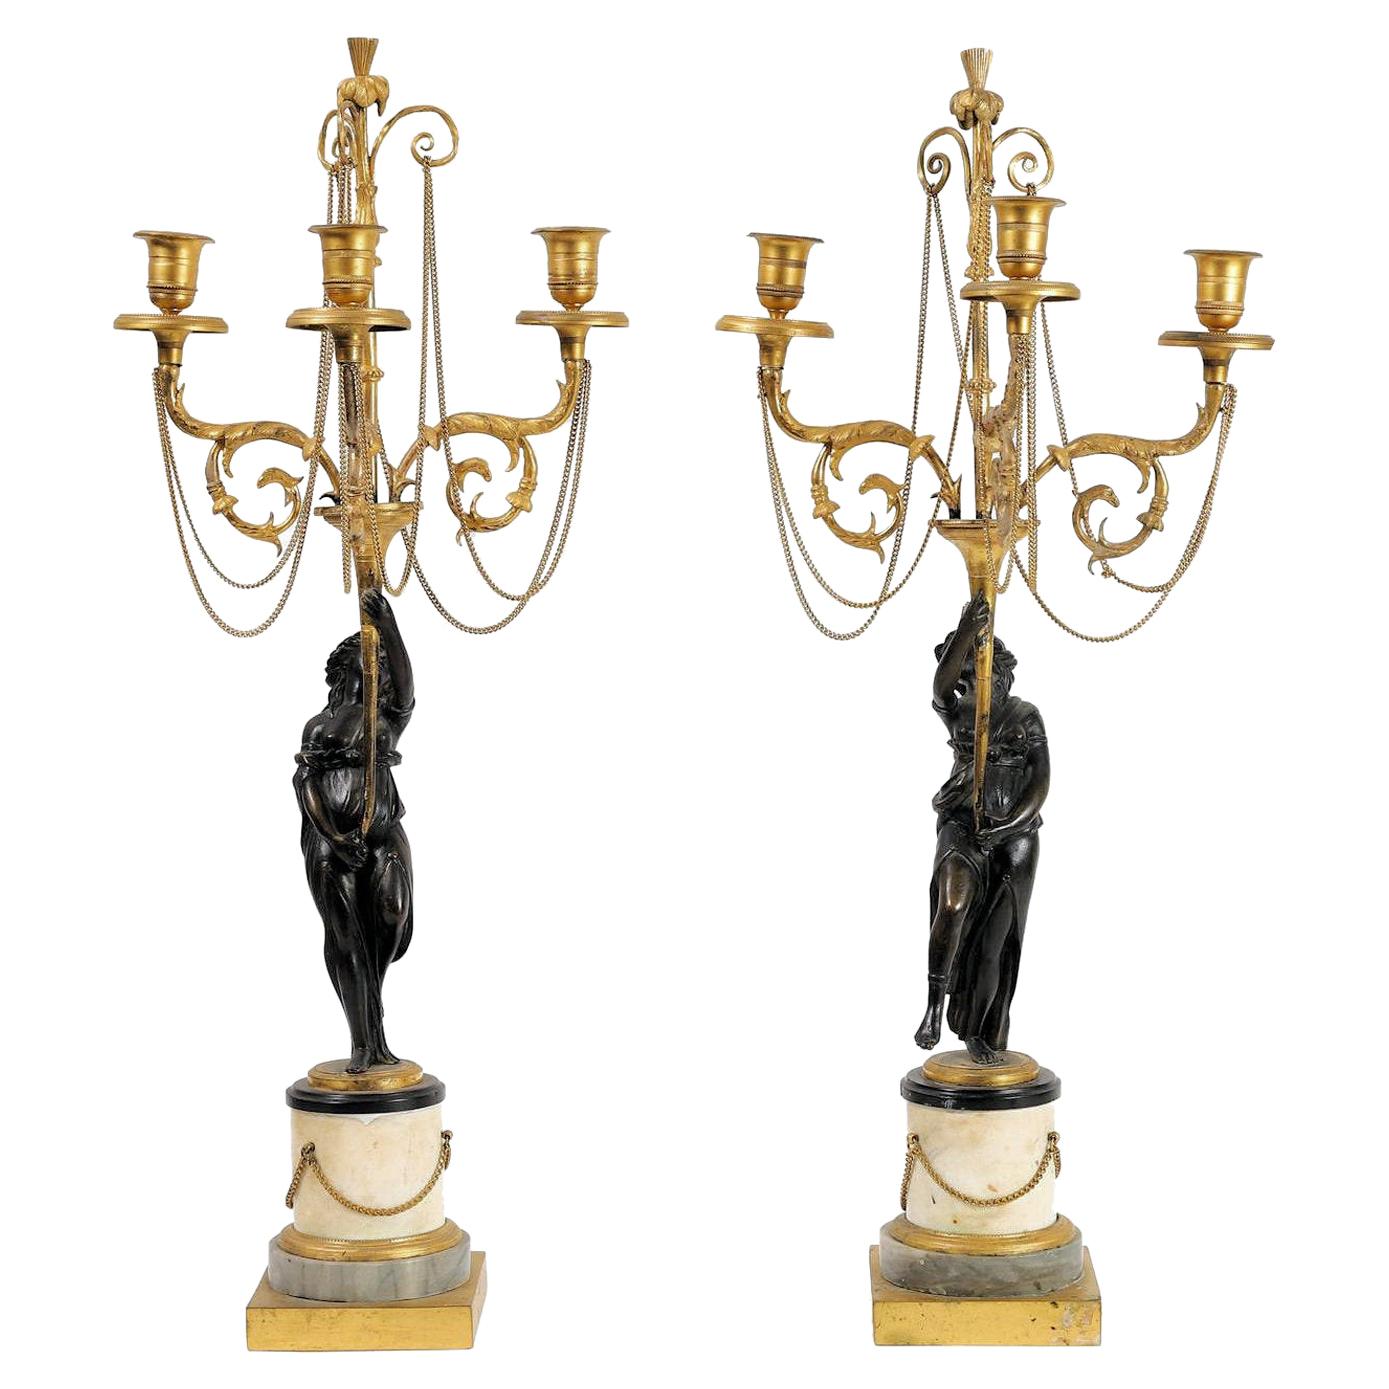 Paire de candélabres figuratifs néoclassiques de style Directoire en bronze doré et patiné